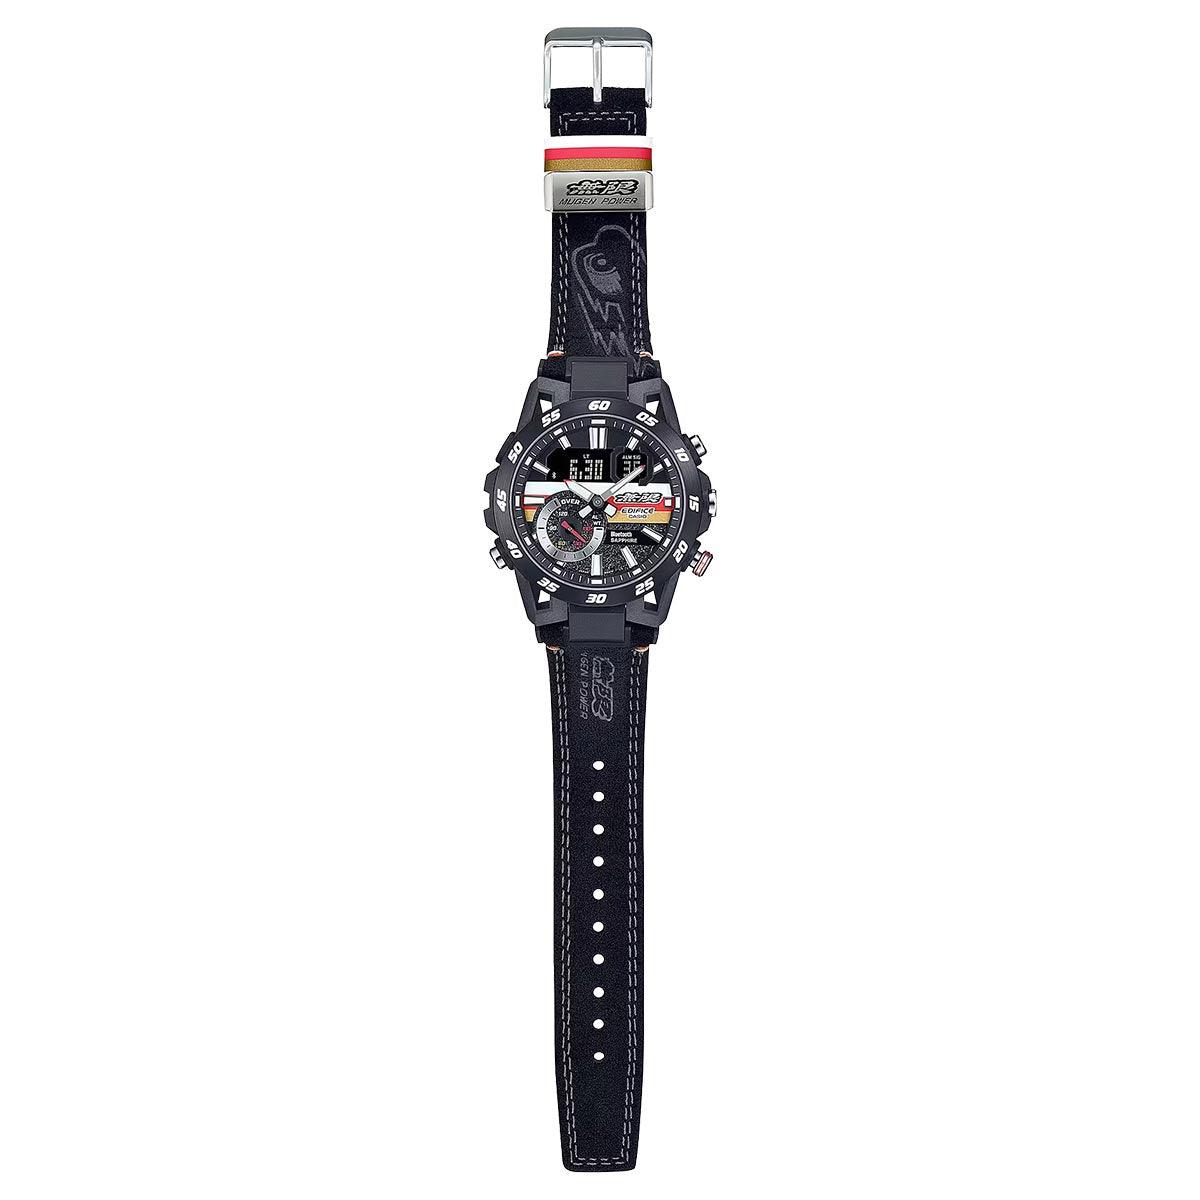 Casio is giving away the 'Honda x Pro Trek PRW-35' watch in Japan -  G-Central G-Shock Fan Site